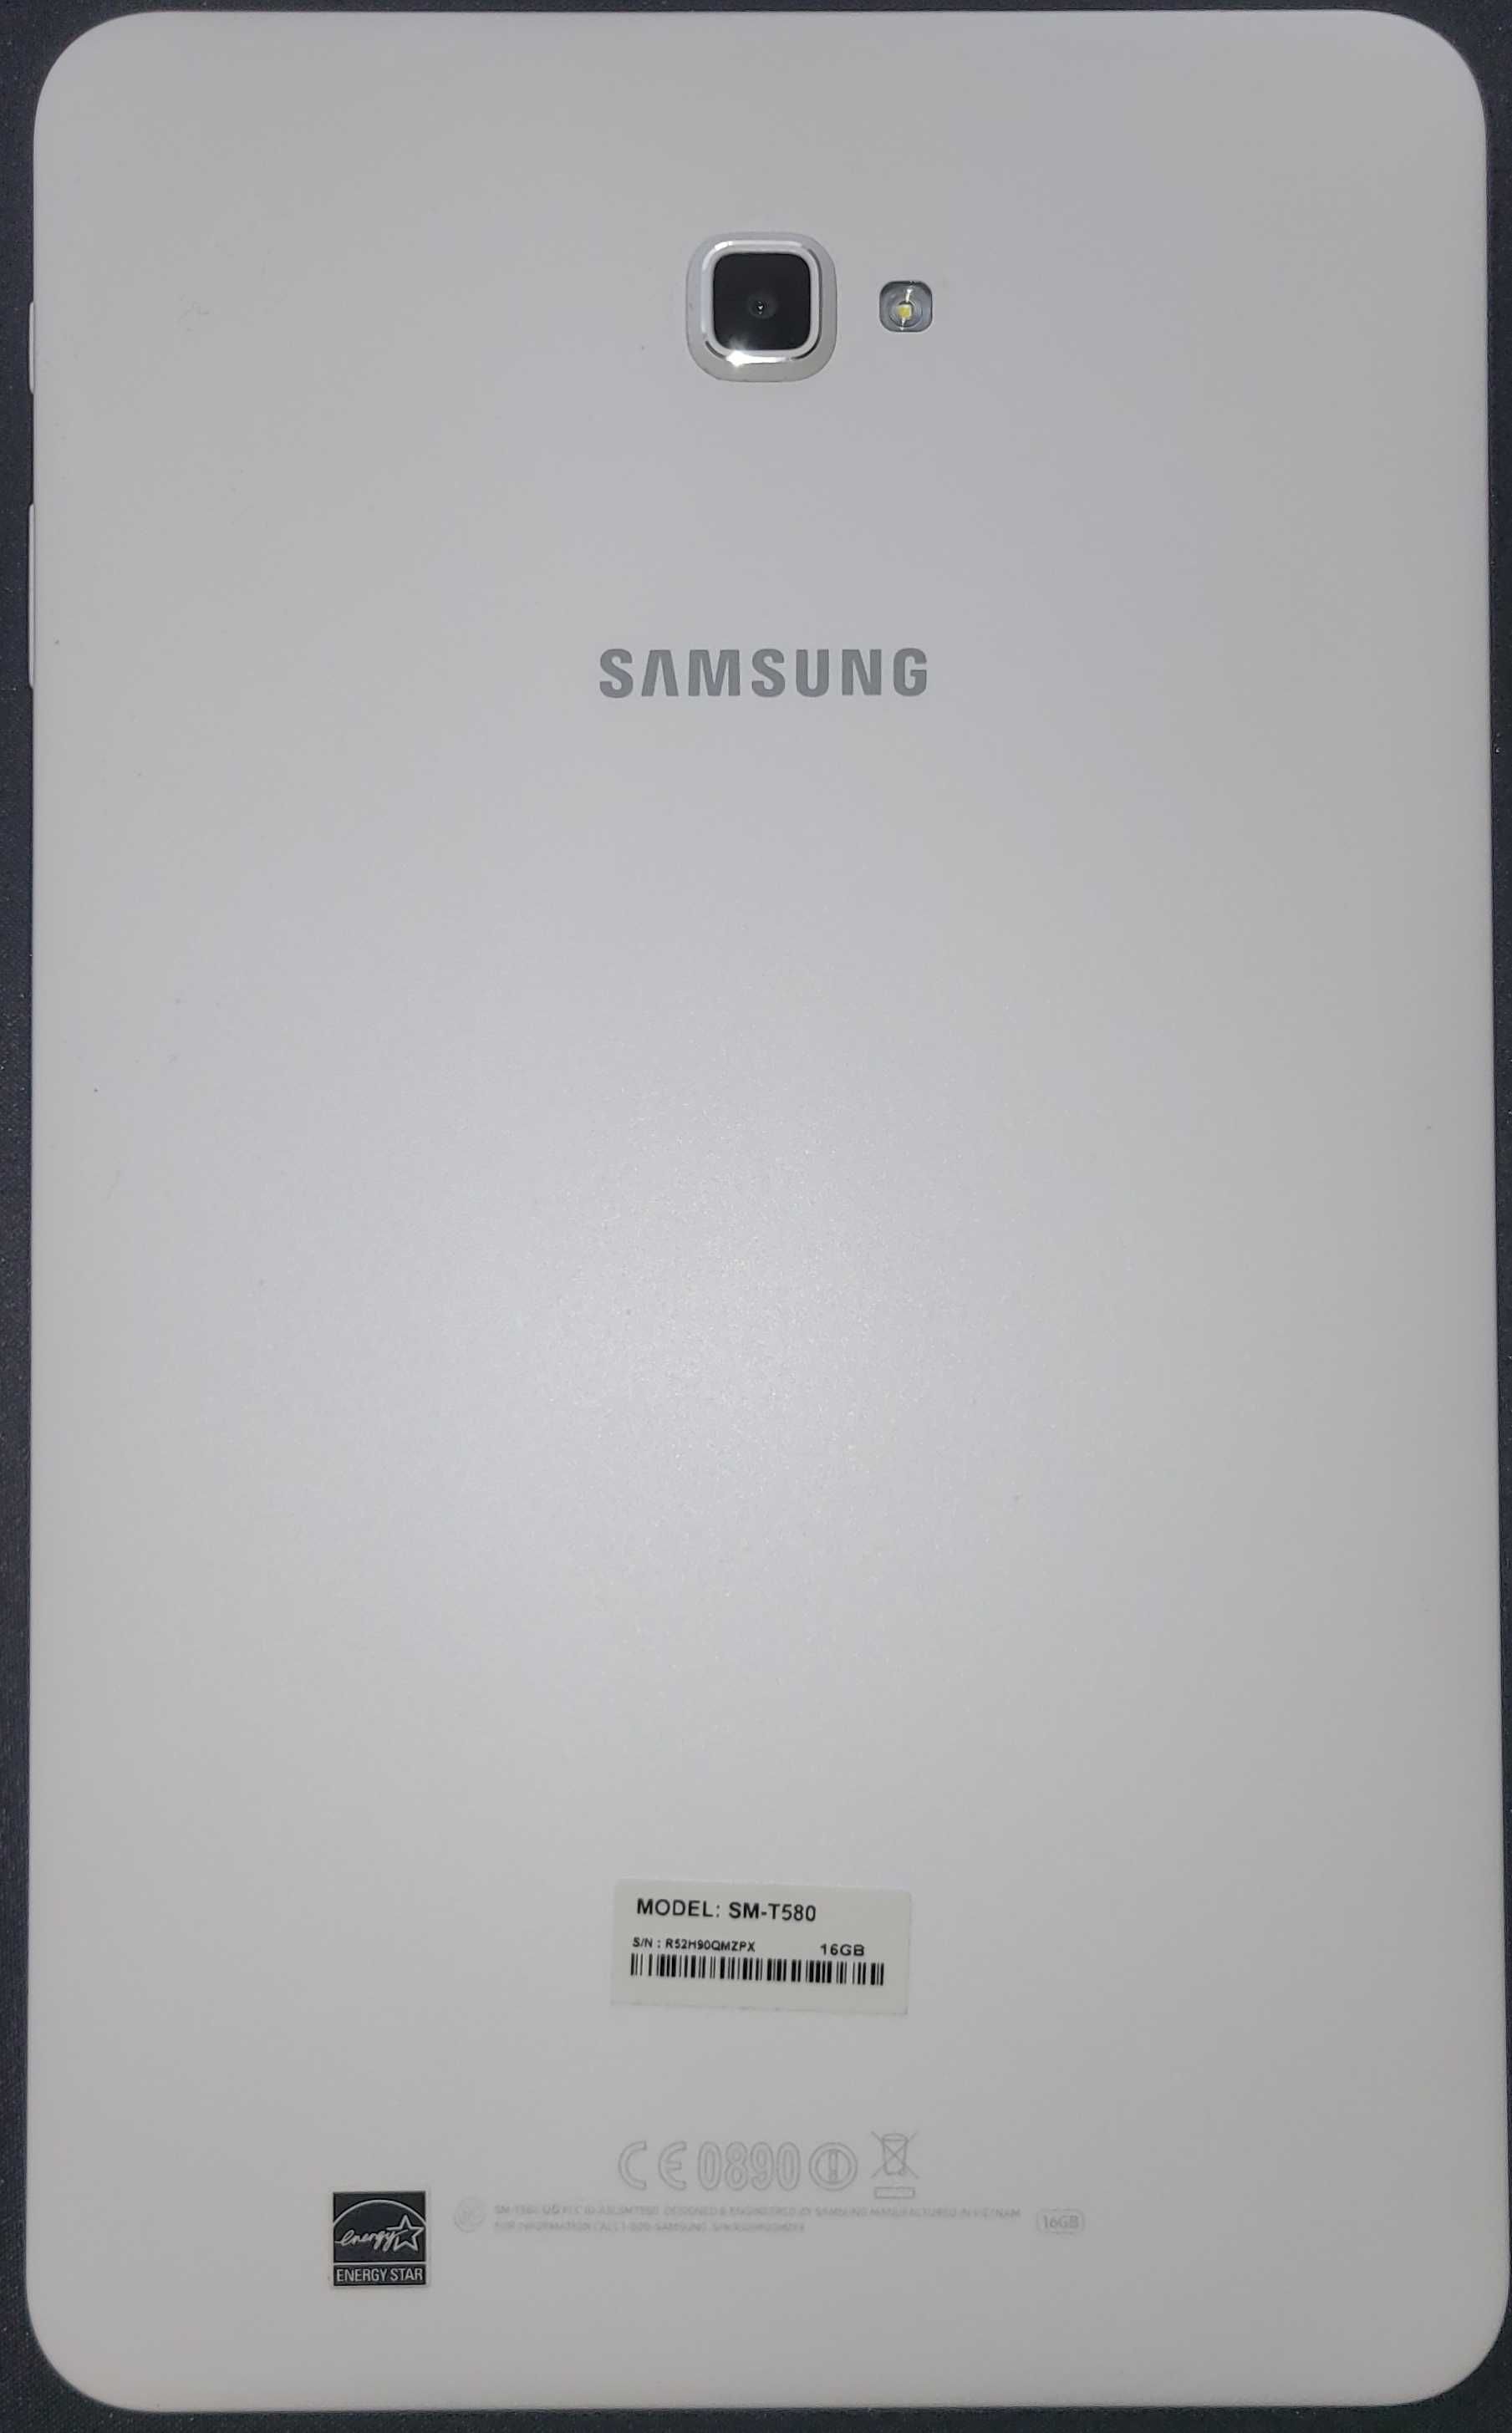 Samsung Galaxy Tab A 10.1 (2016) Wi-Fi SM-T580 Exynos 7870 2/16 GB